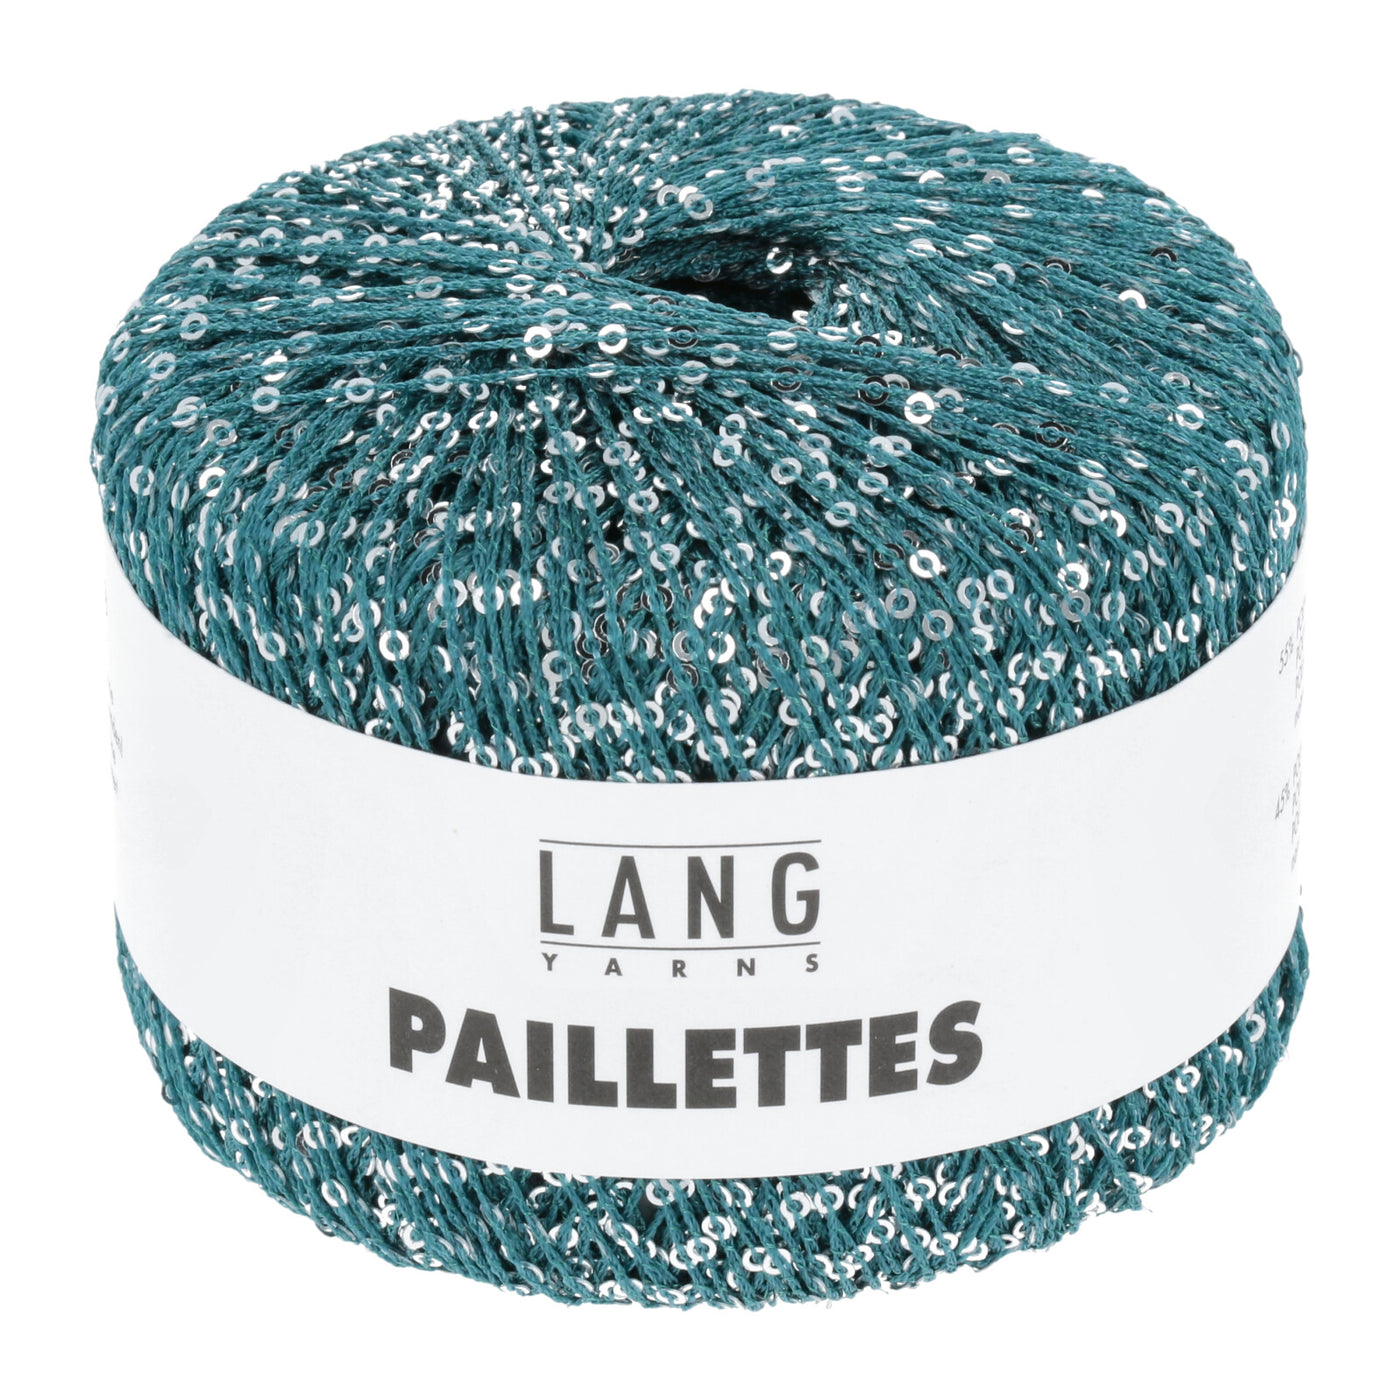 Lang Paillettes - Sparkle Thread